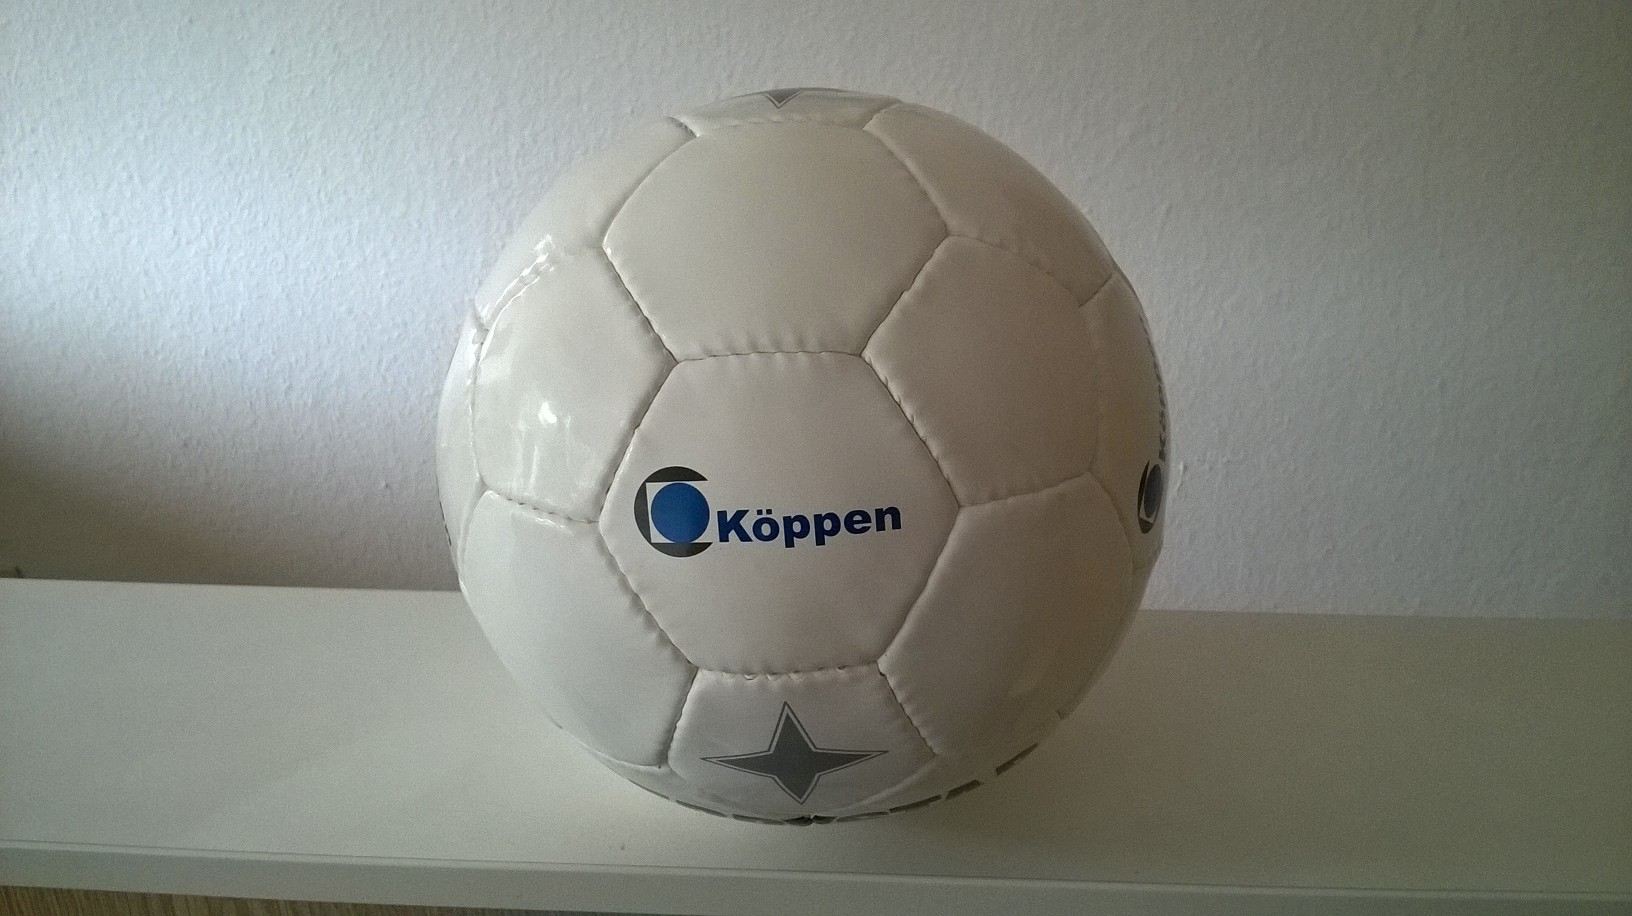 Köppen Ball